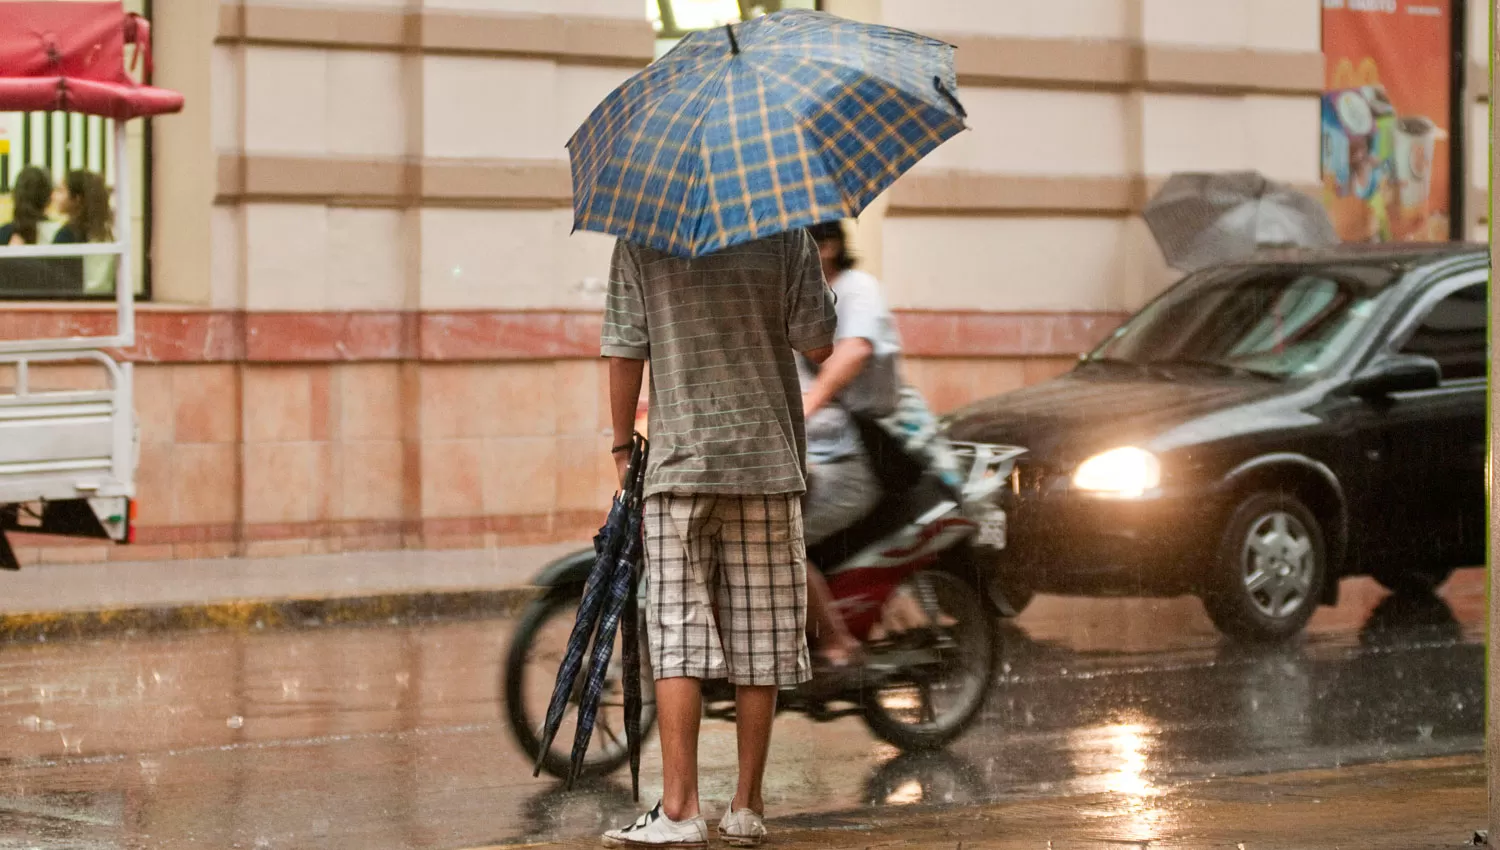 Paraguas, paraguas, será el grito que se escuchará en las calles del centro.